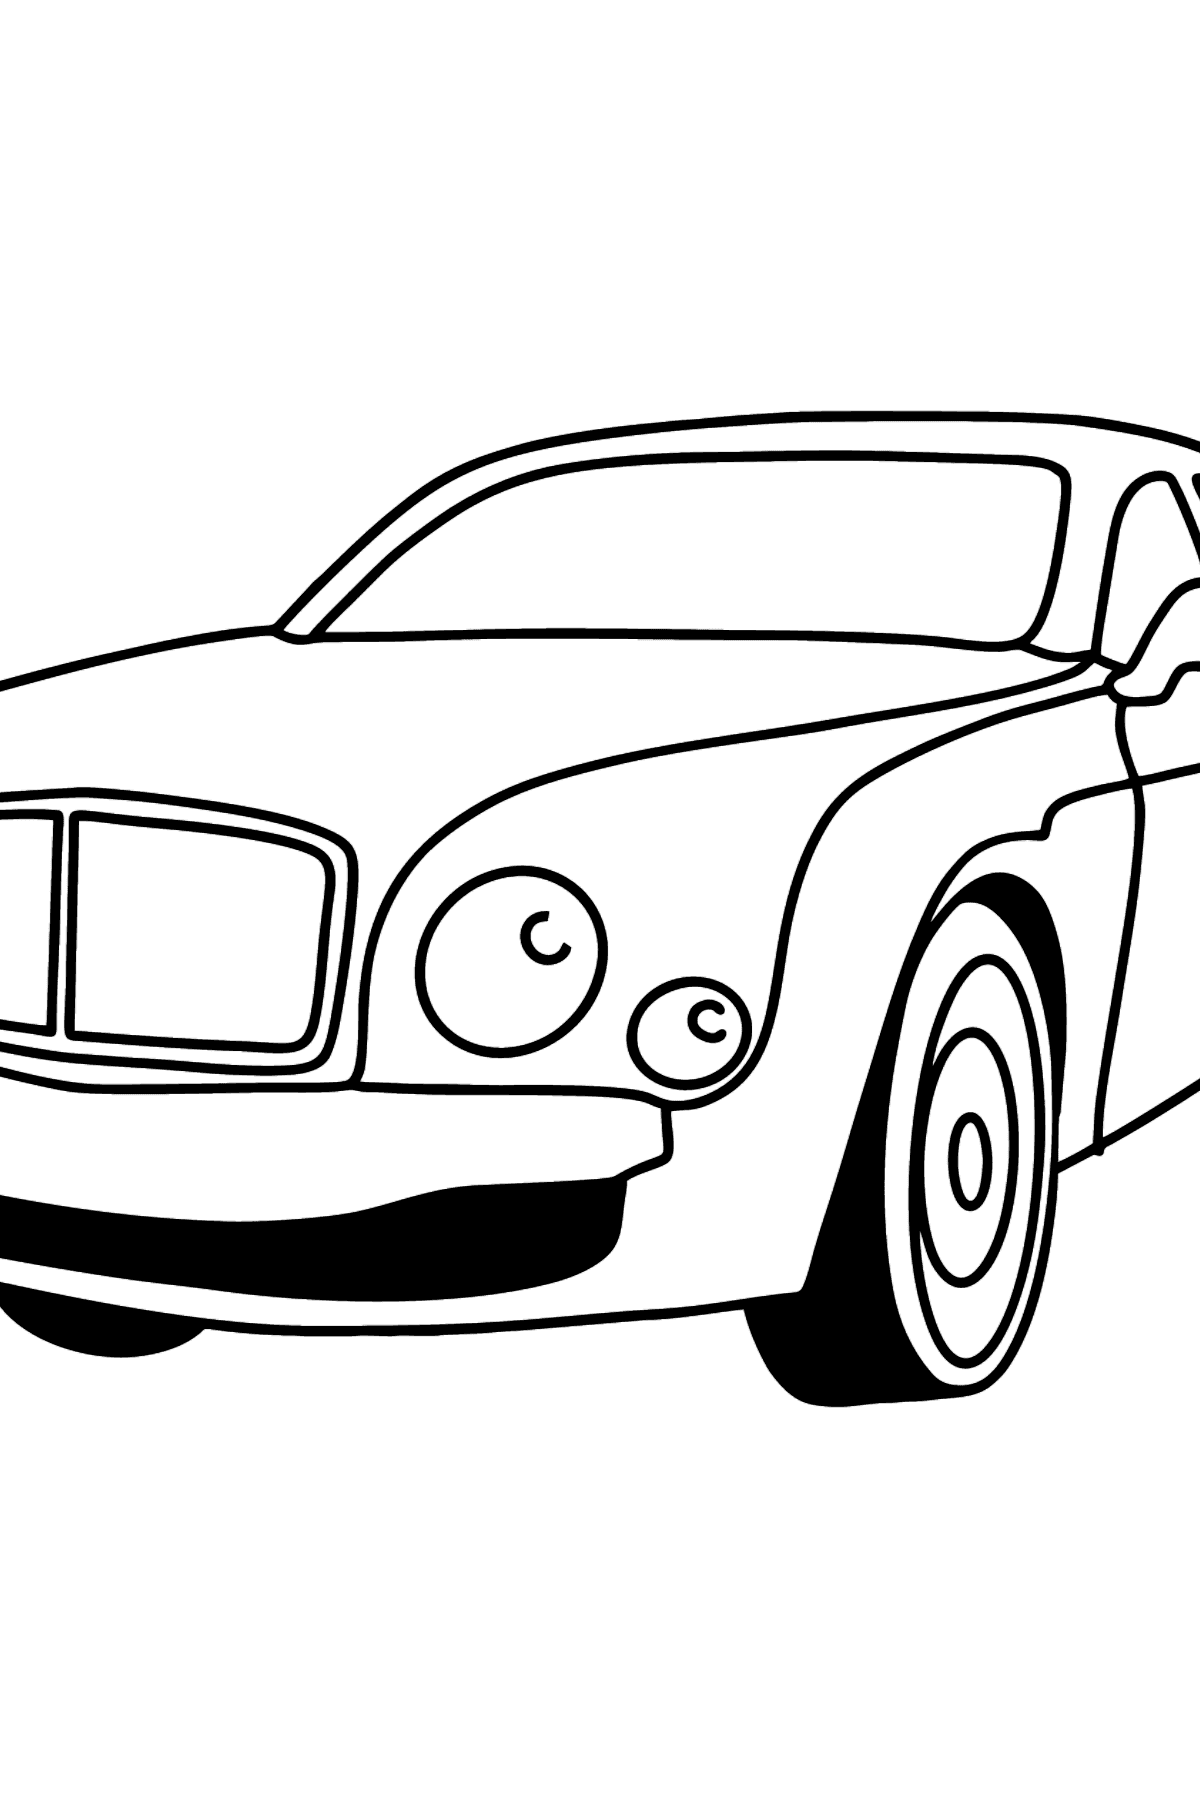 Desenhos para colorir do carro Bentley - Imagens para Colorir para Crianças